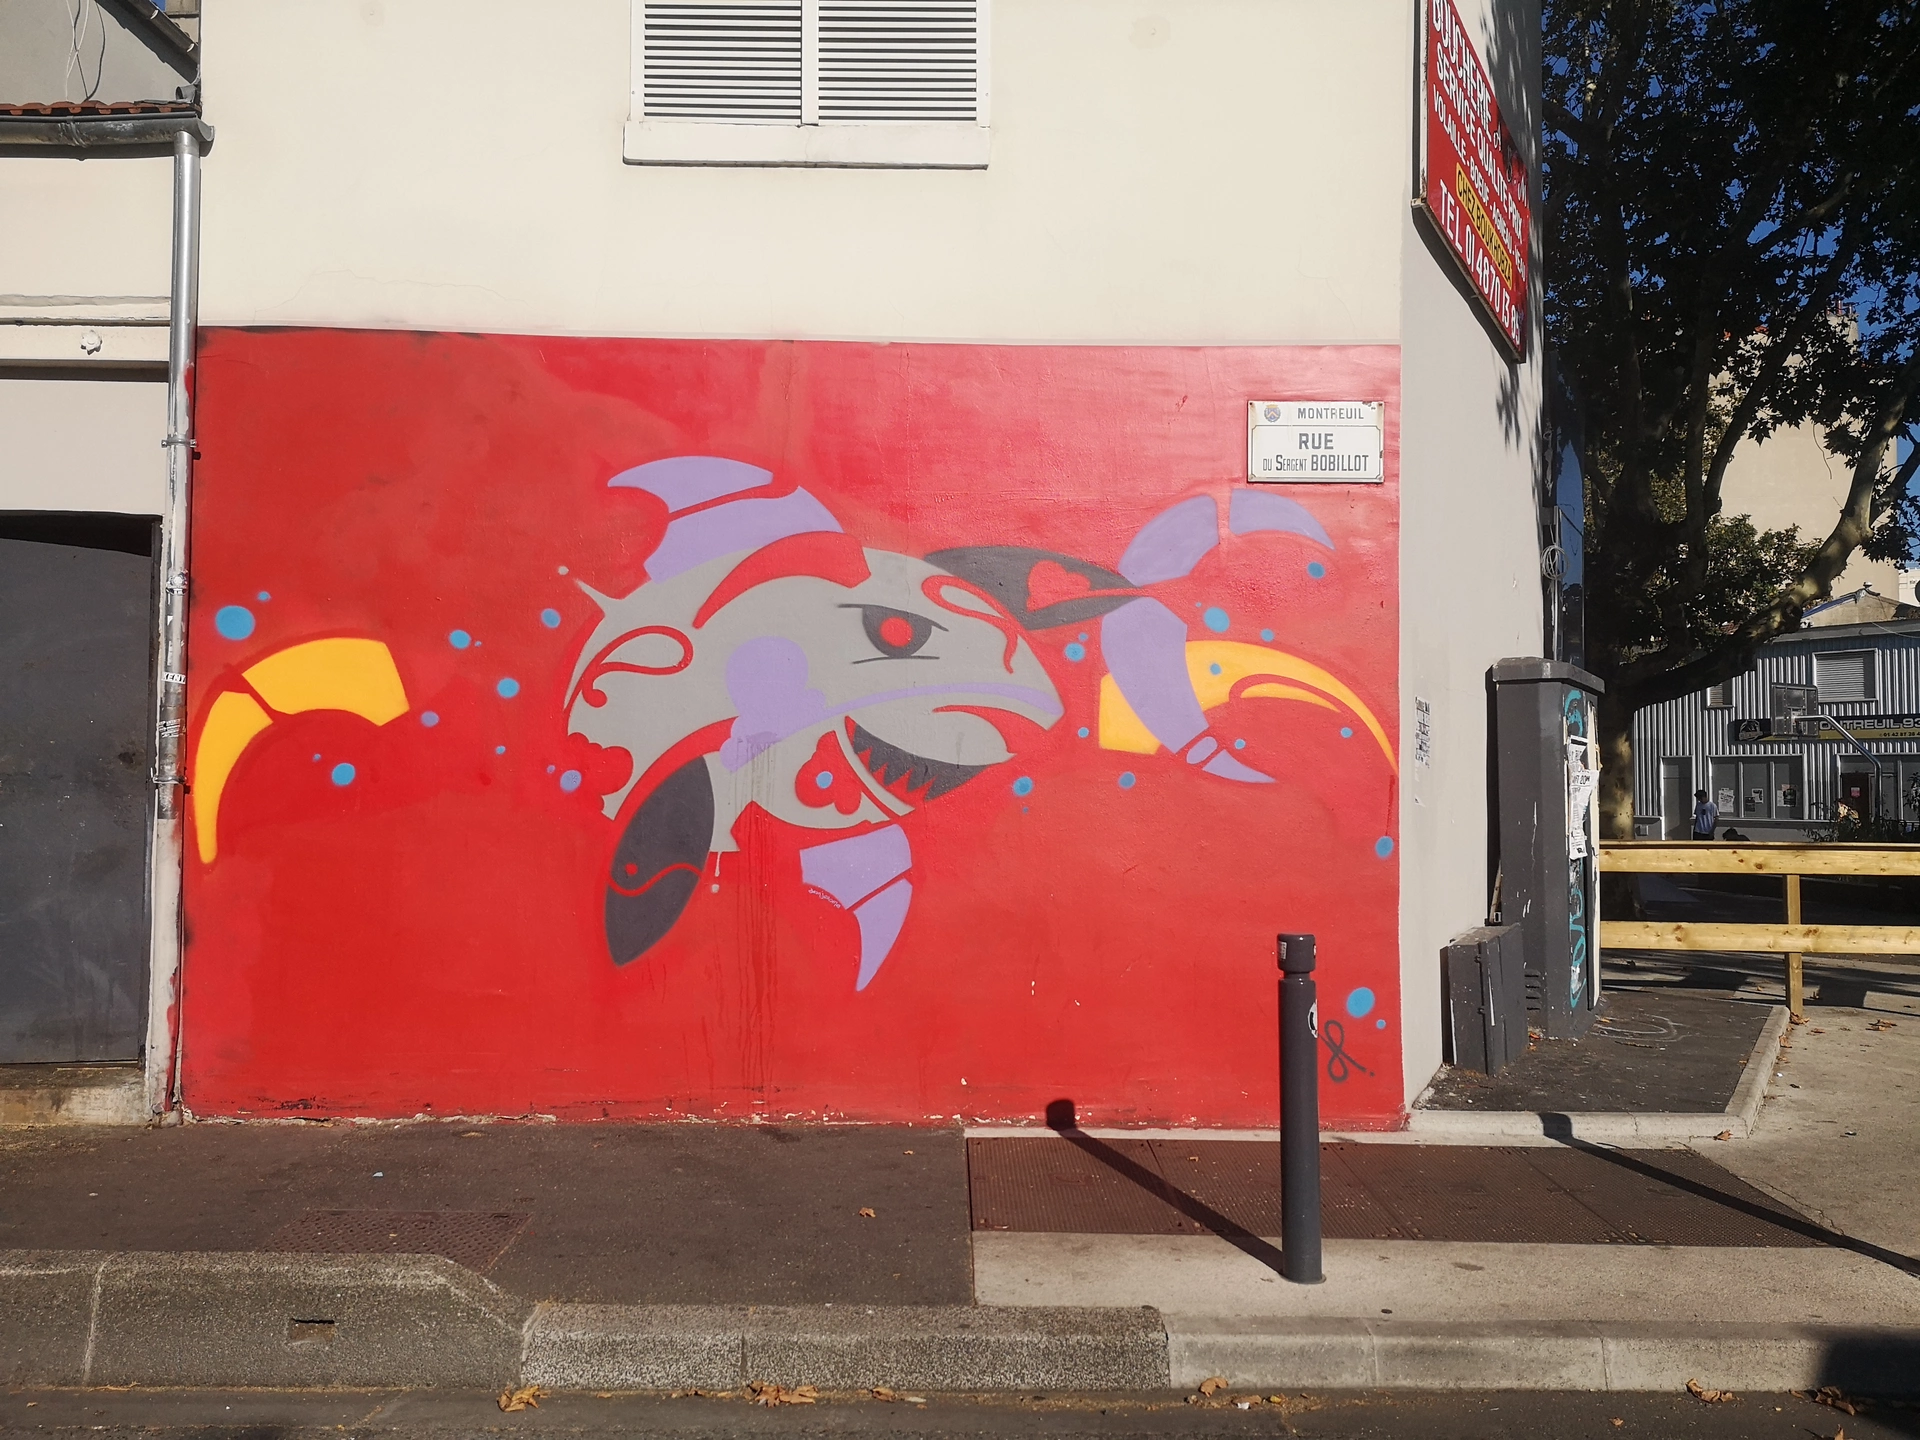 Oeuvre de Street Art réalisée par Jeanjerome à Montreuil